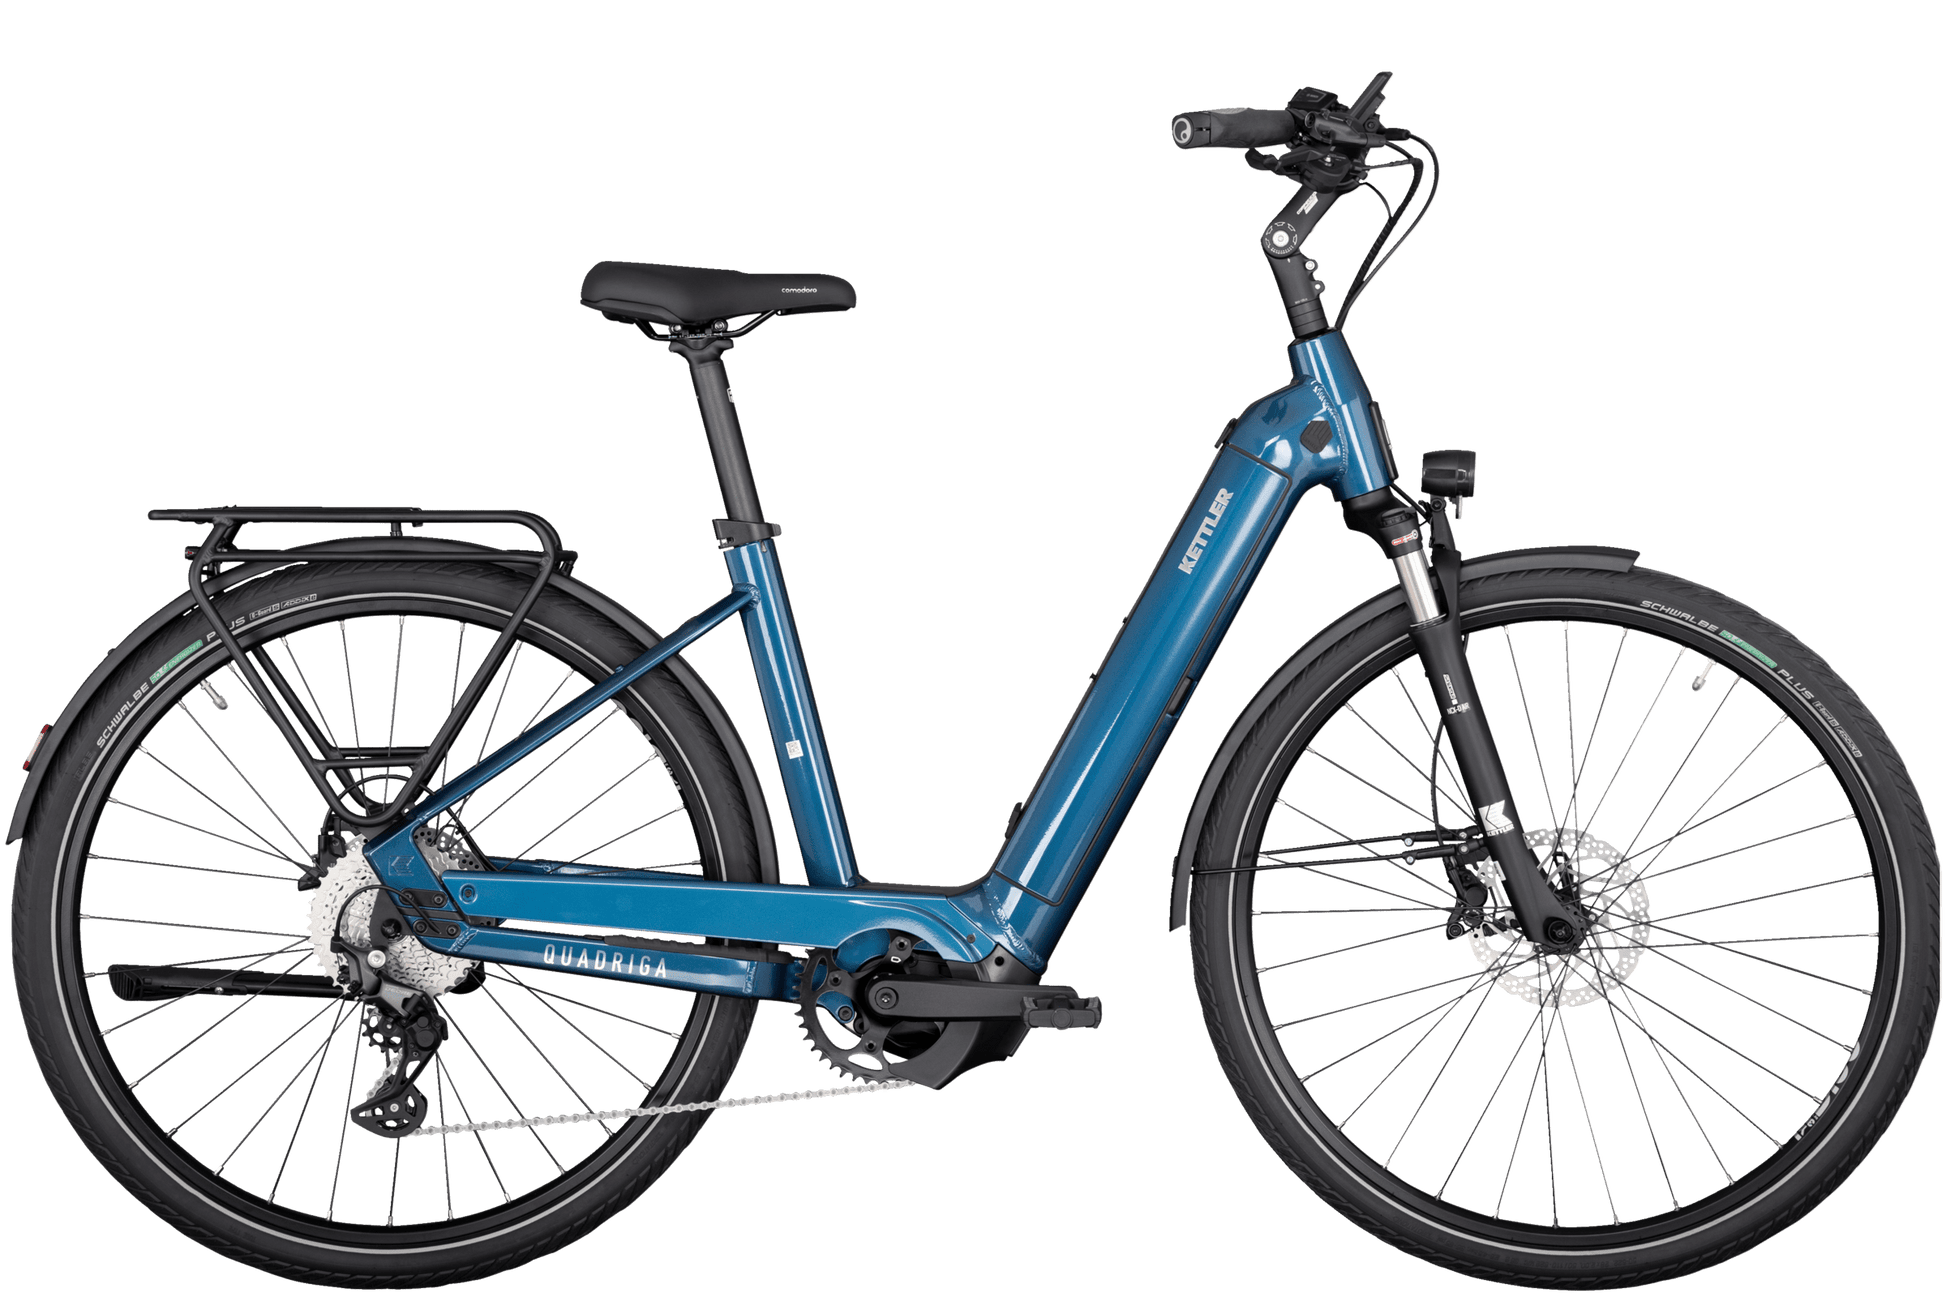 Ein blaues Kettler Quadriga CX10 Fahrrad, Dank K-Link-Kupplung für Anhänger vorbereitet, shwarzer Sattel